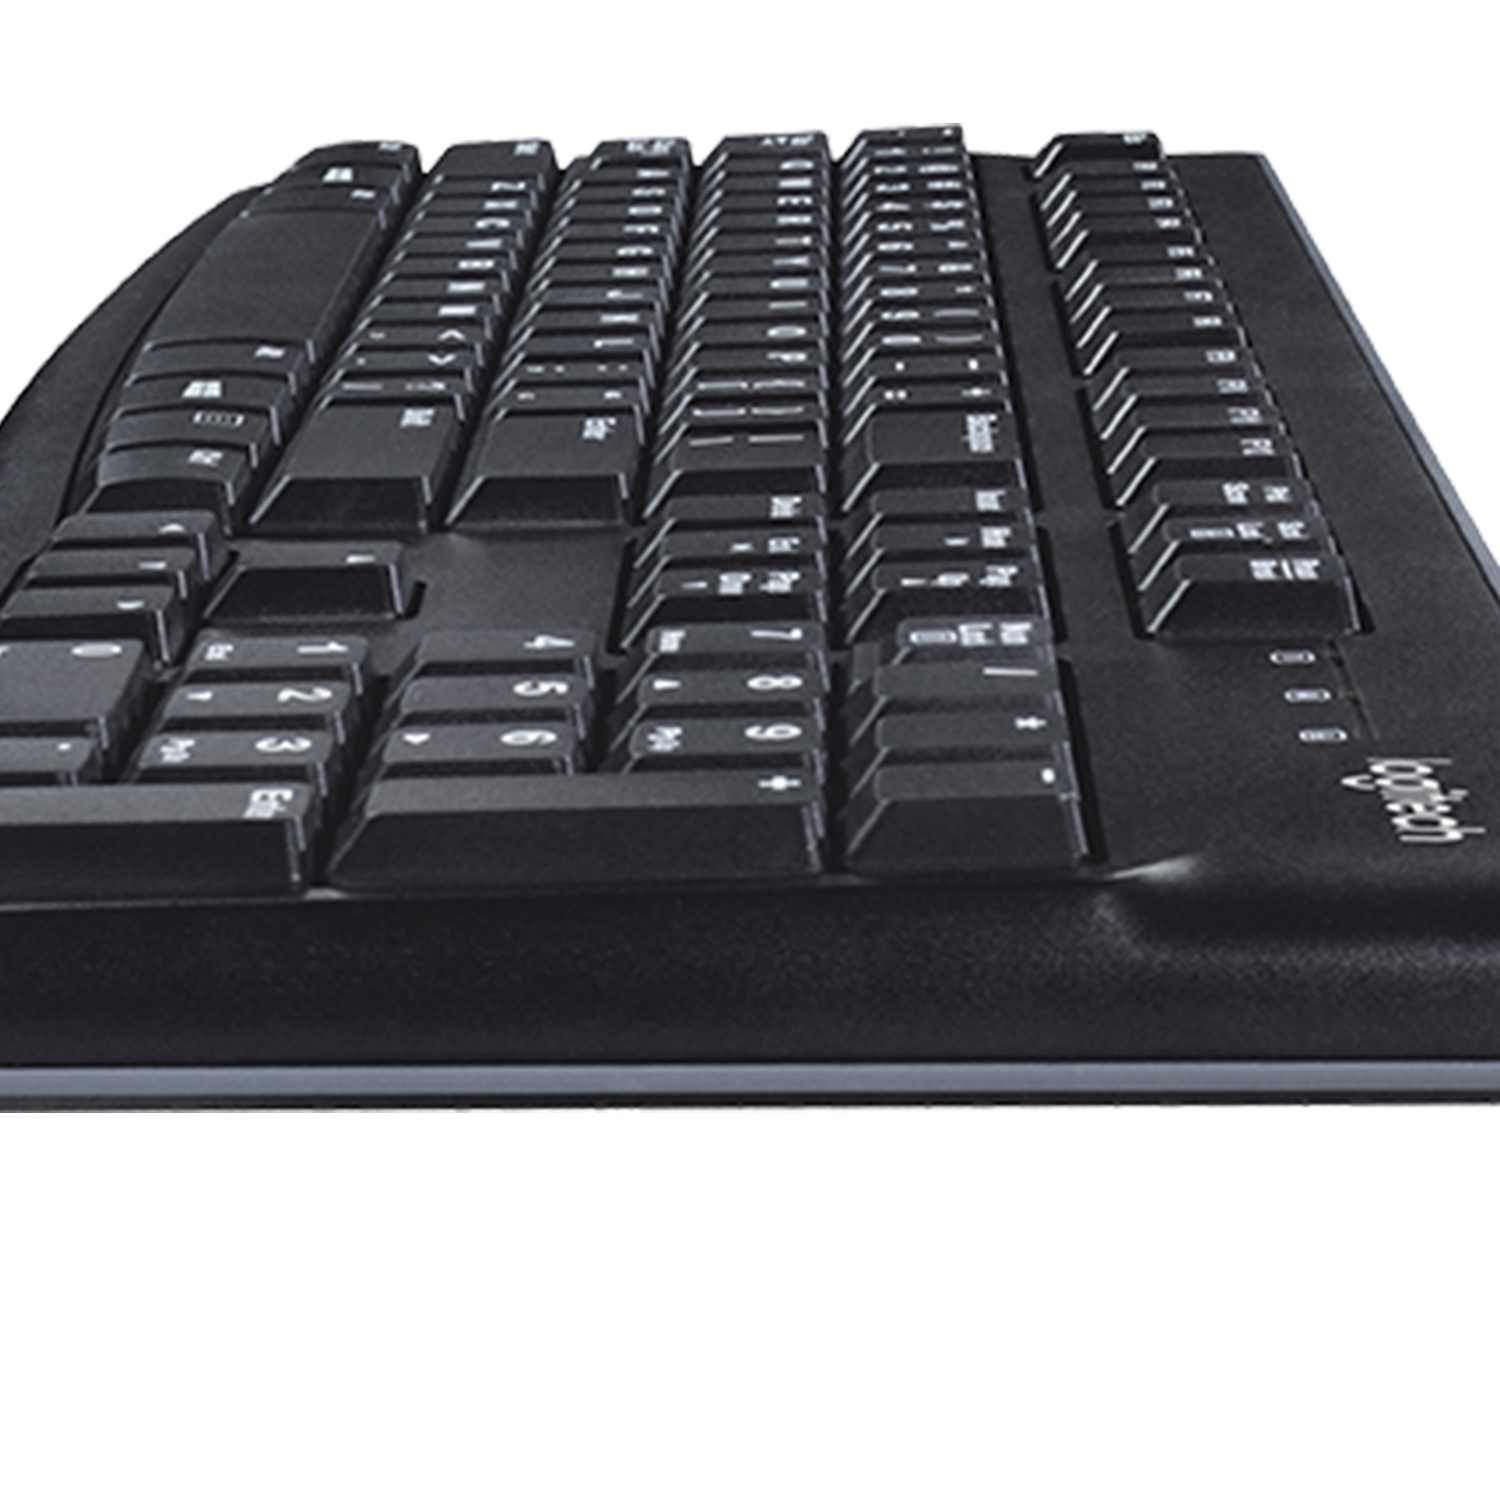 Logitech keyboard K120